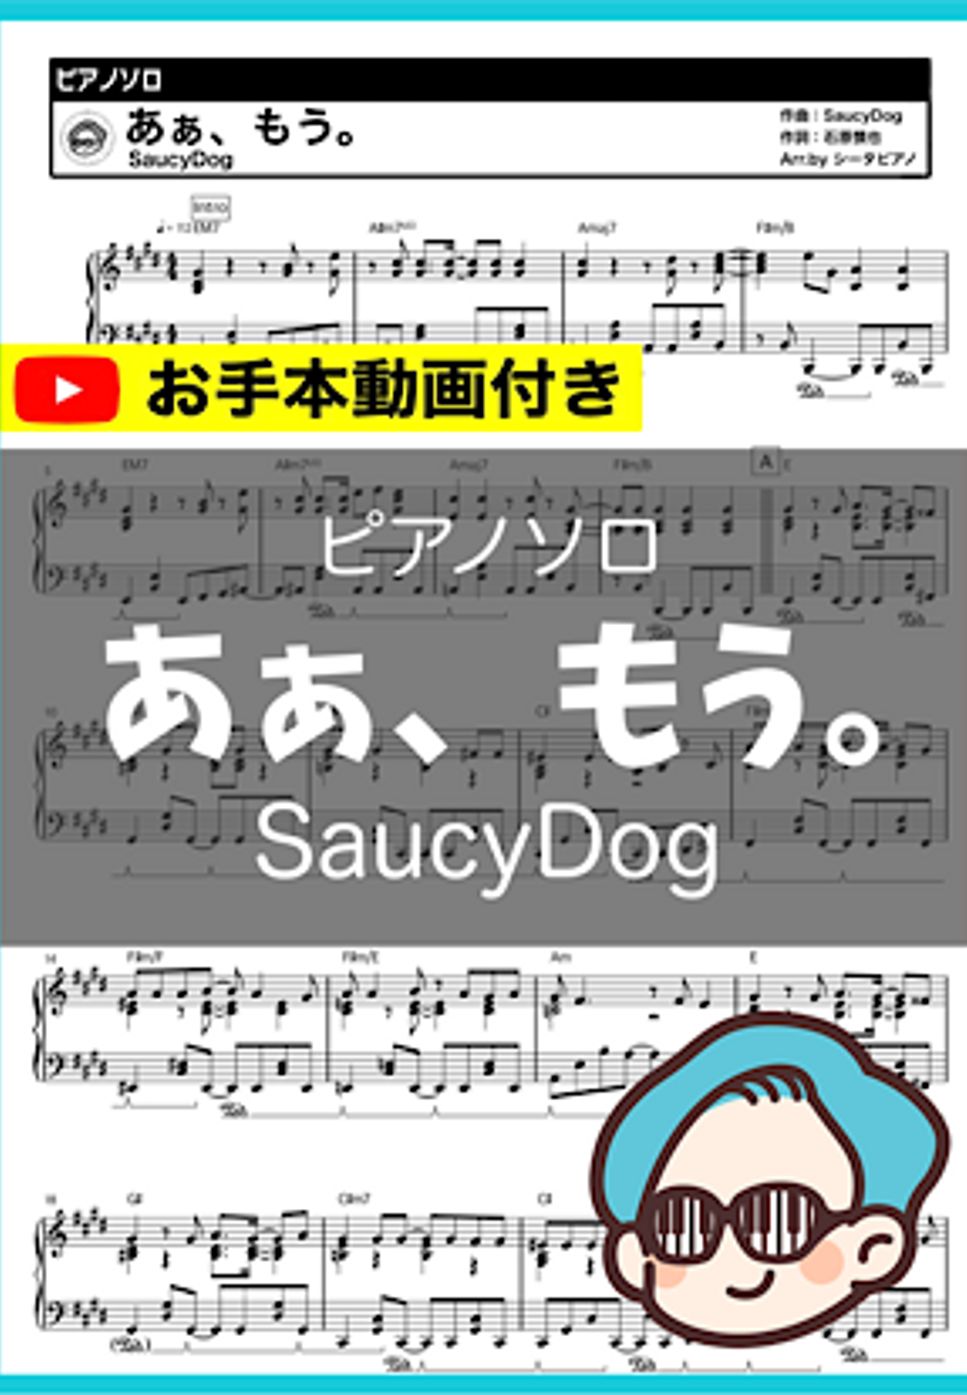 SaucyDog - あぁ、もう。 by シータピアノ